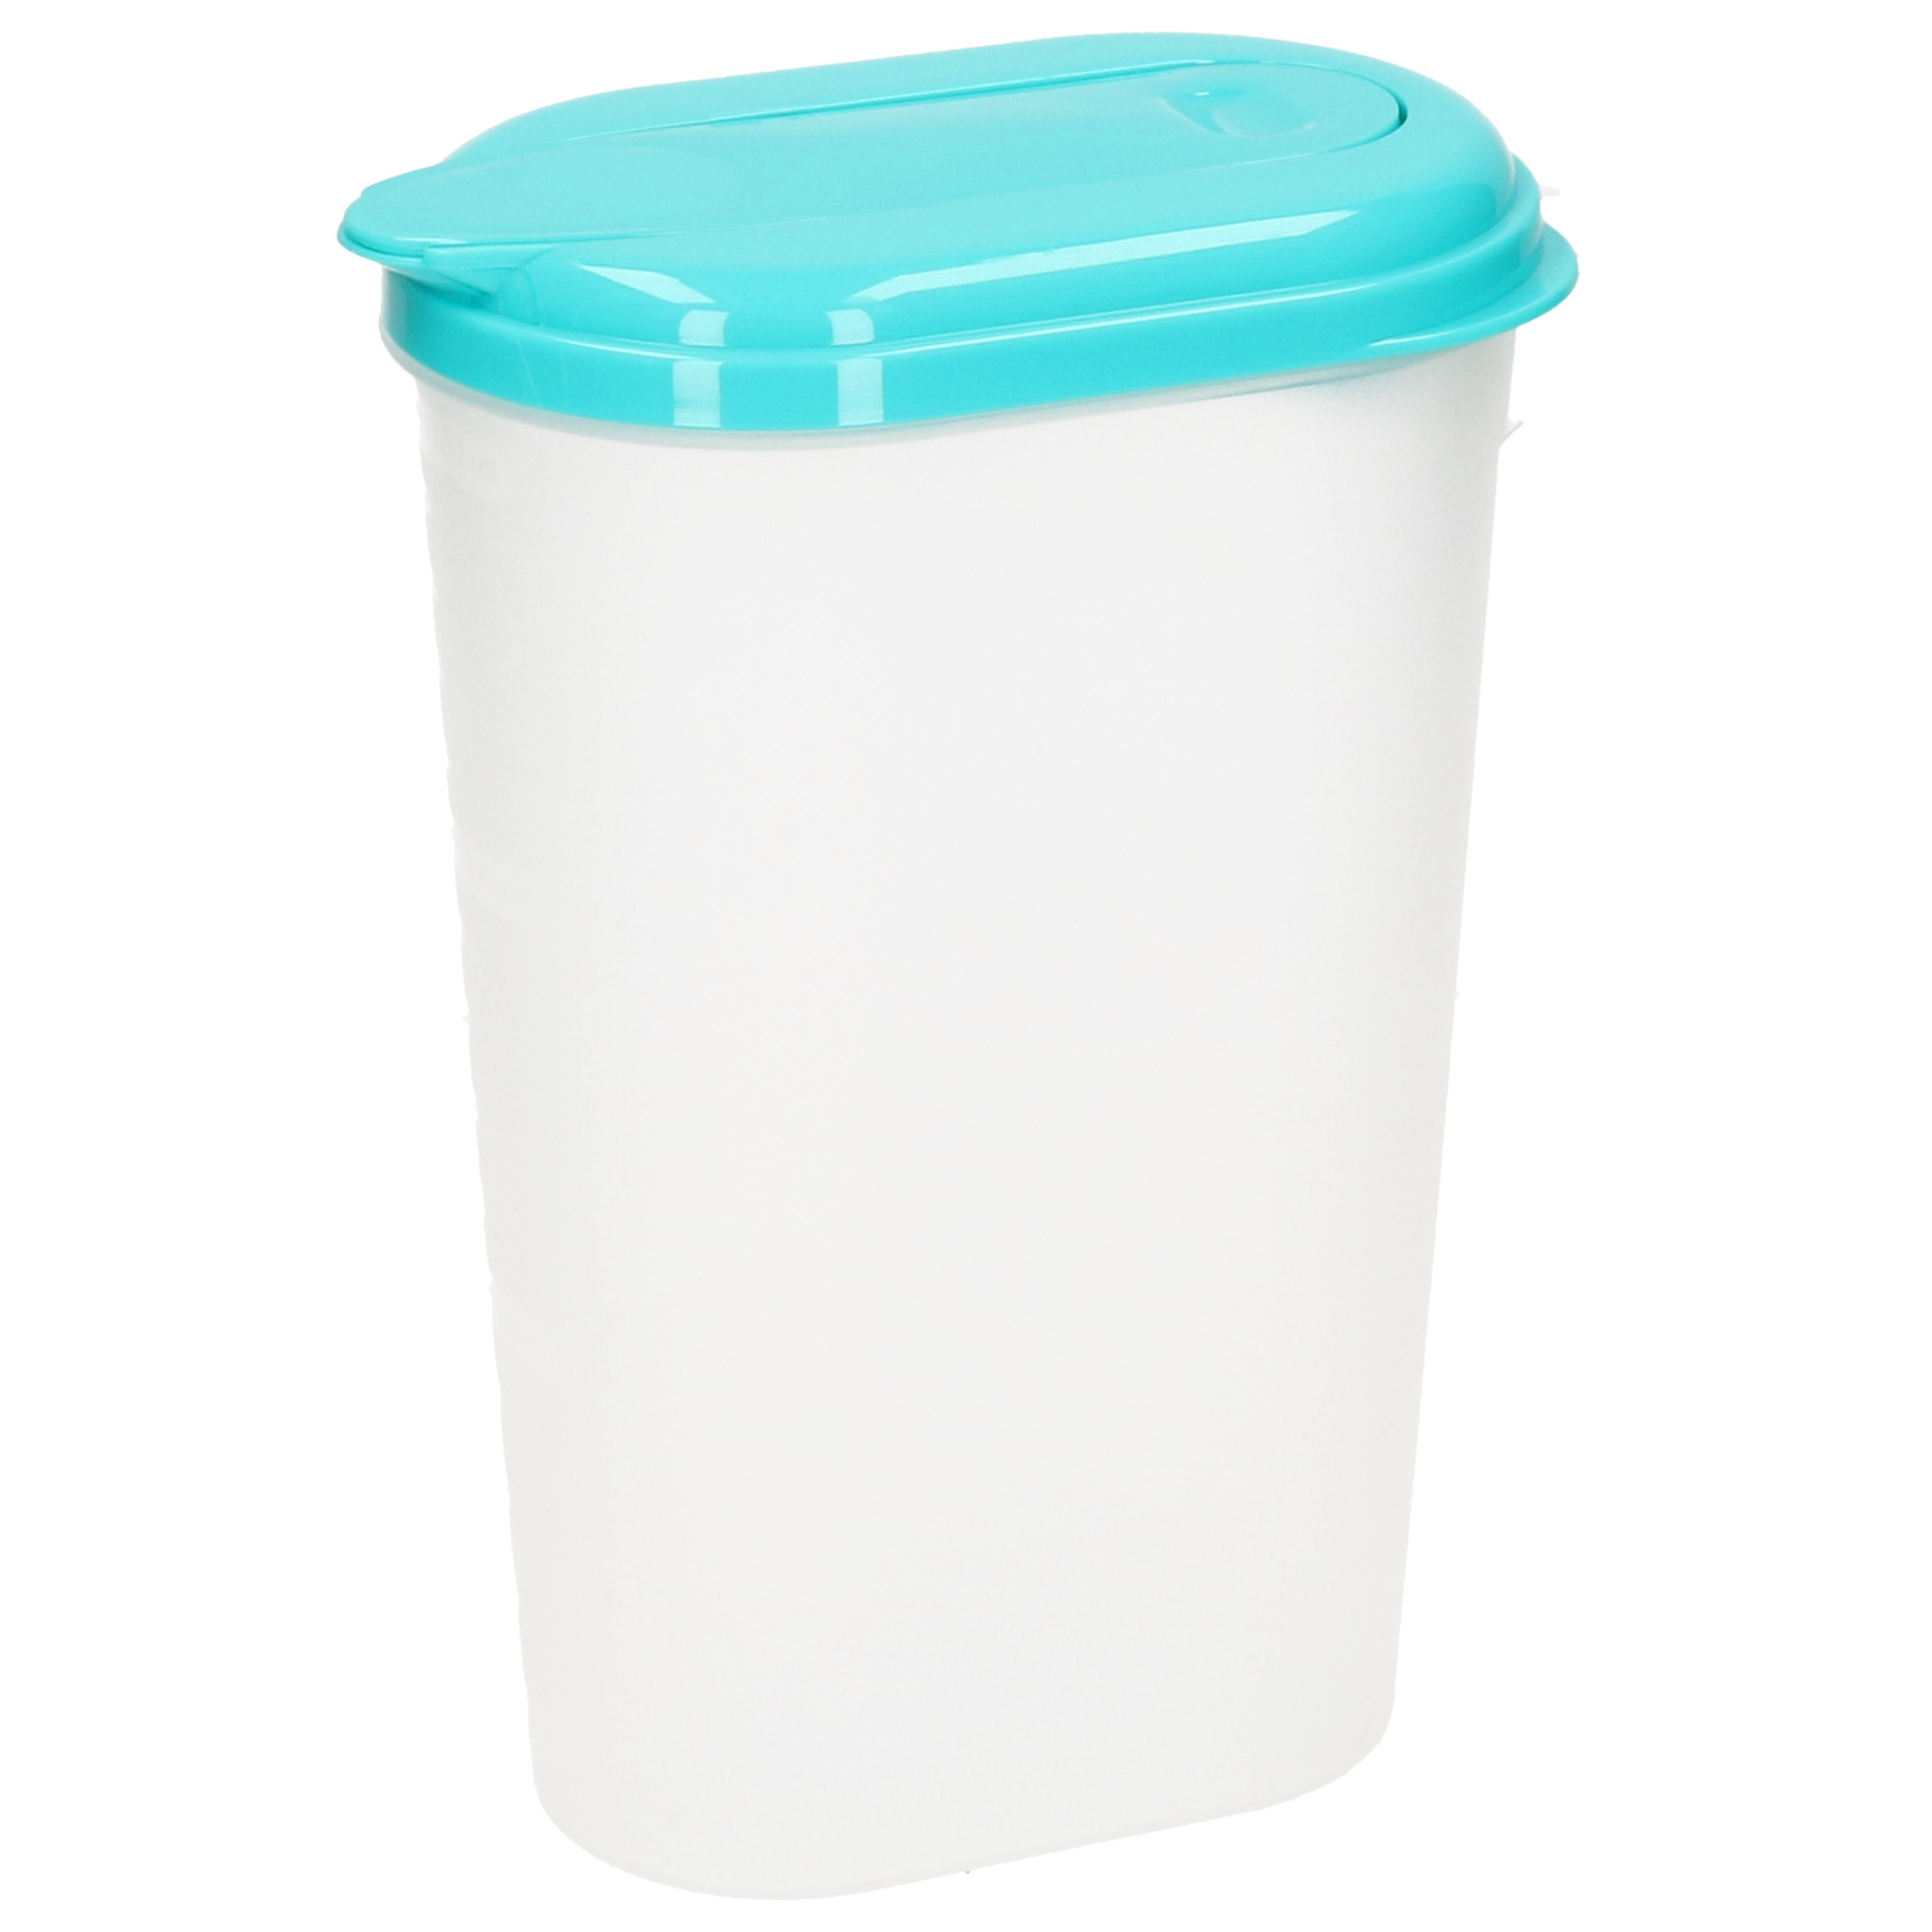 PlasticForte Waterkan/sapkan - transparant/aqua groen - met deksel - 1.6 liter - kunststof -